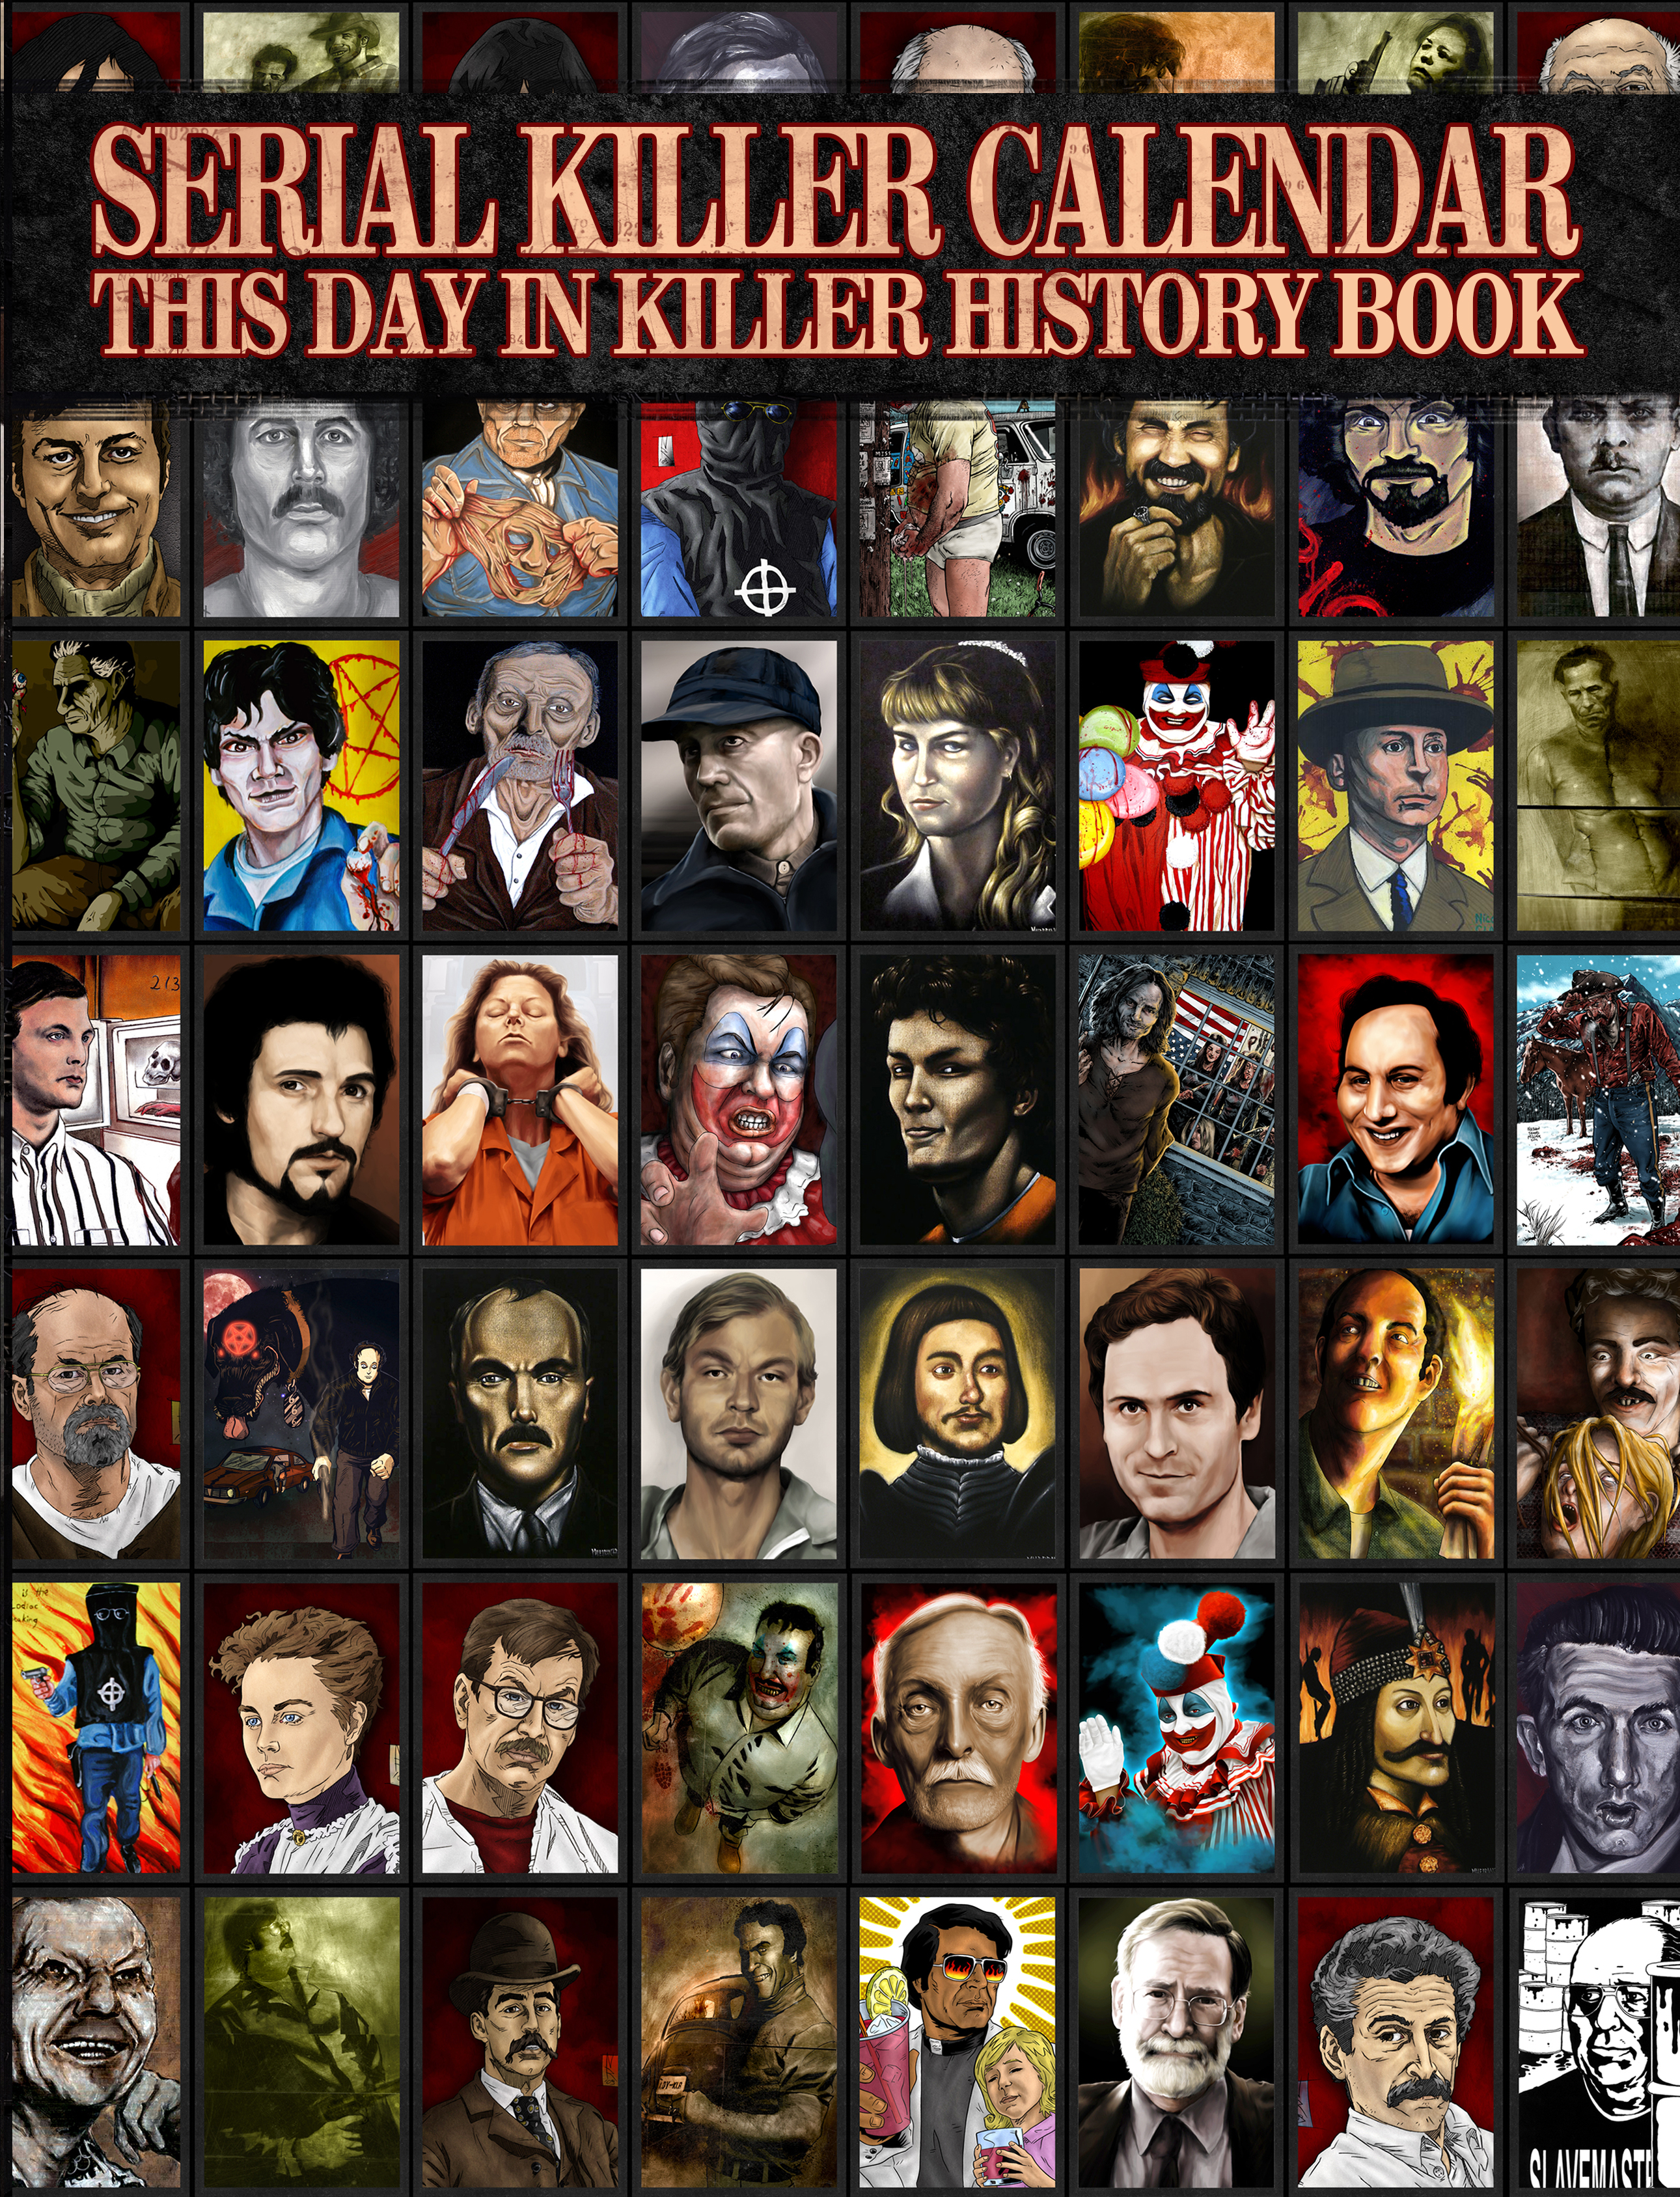 SERIAL KILLER CALENDAR: THIS DAY IN SERIAL KILLER HISTORY BOOK